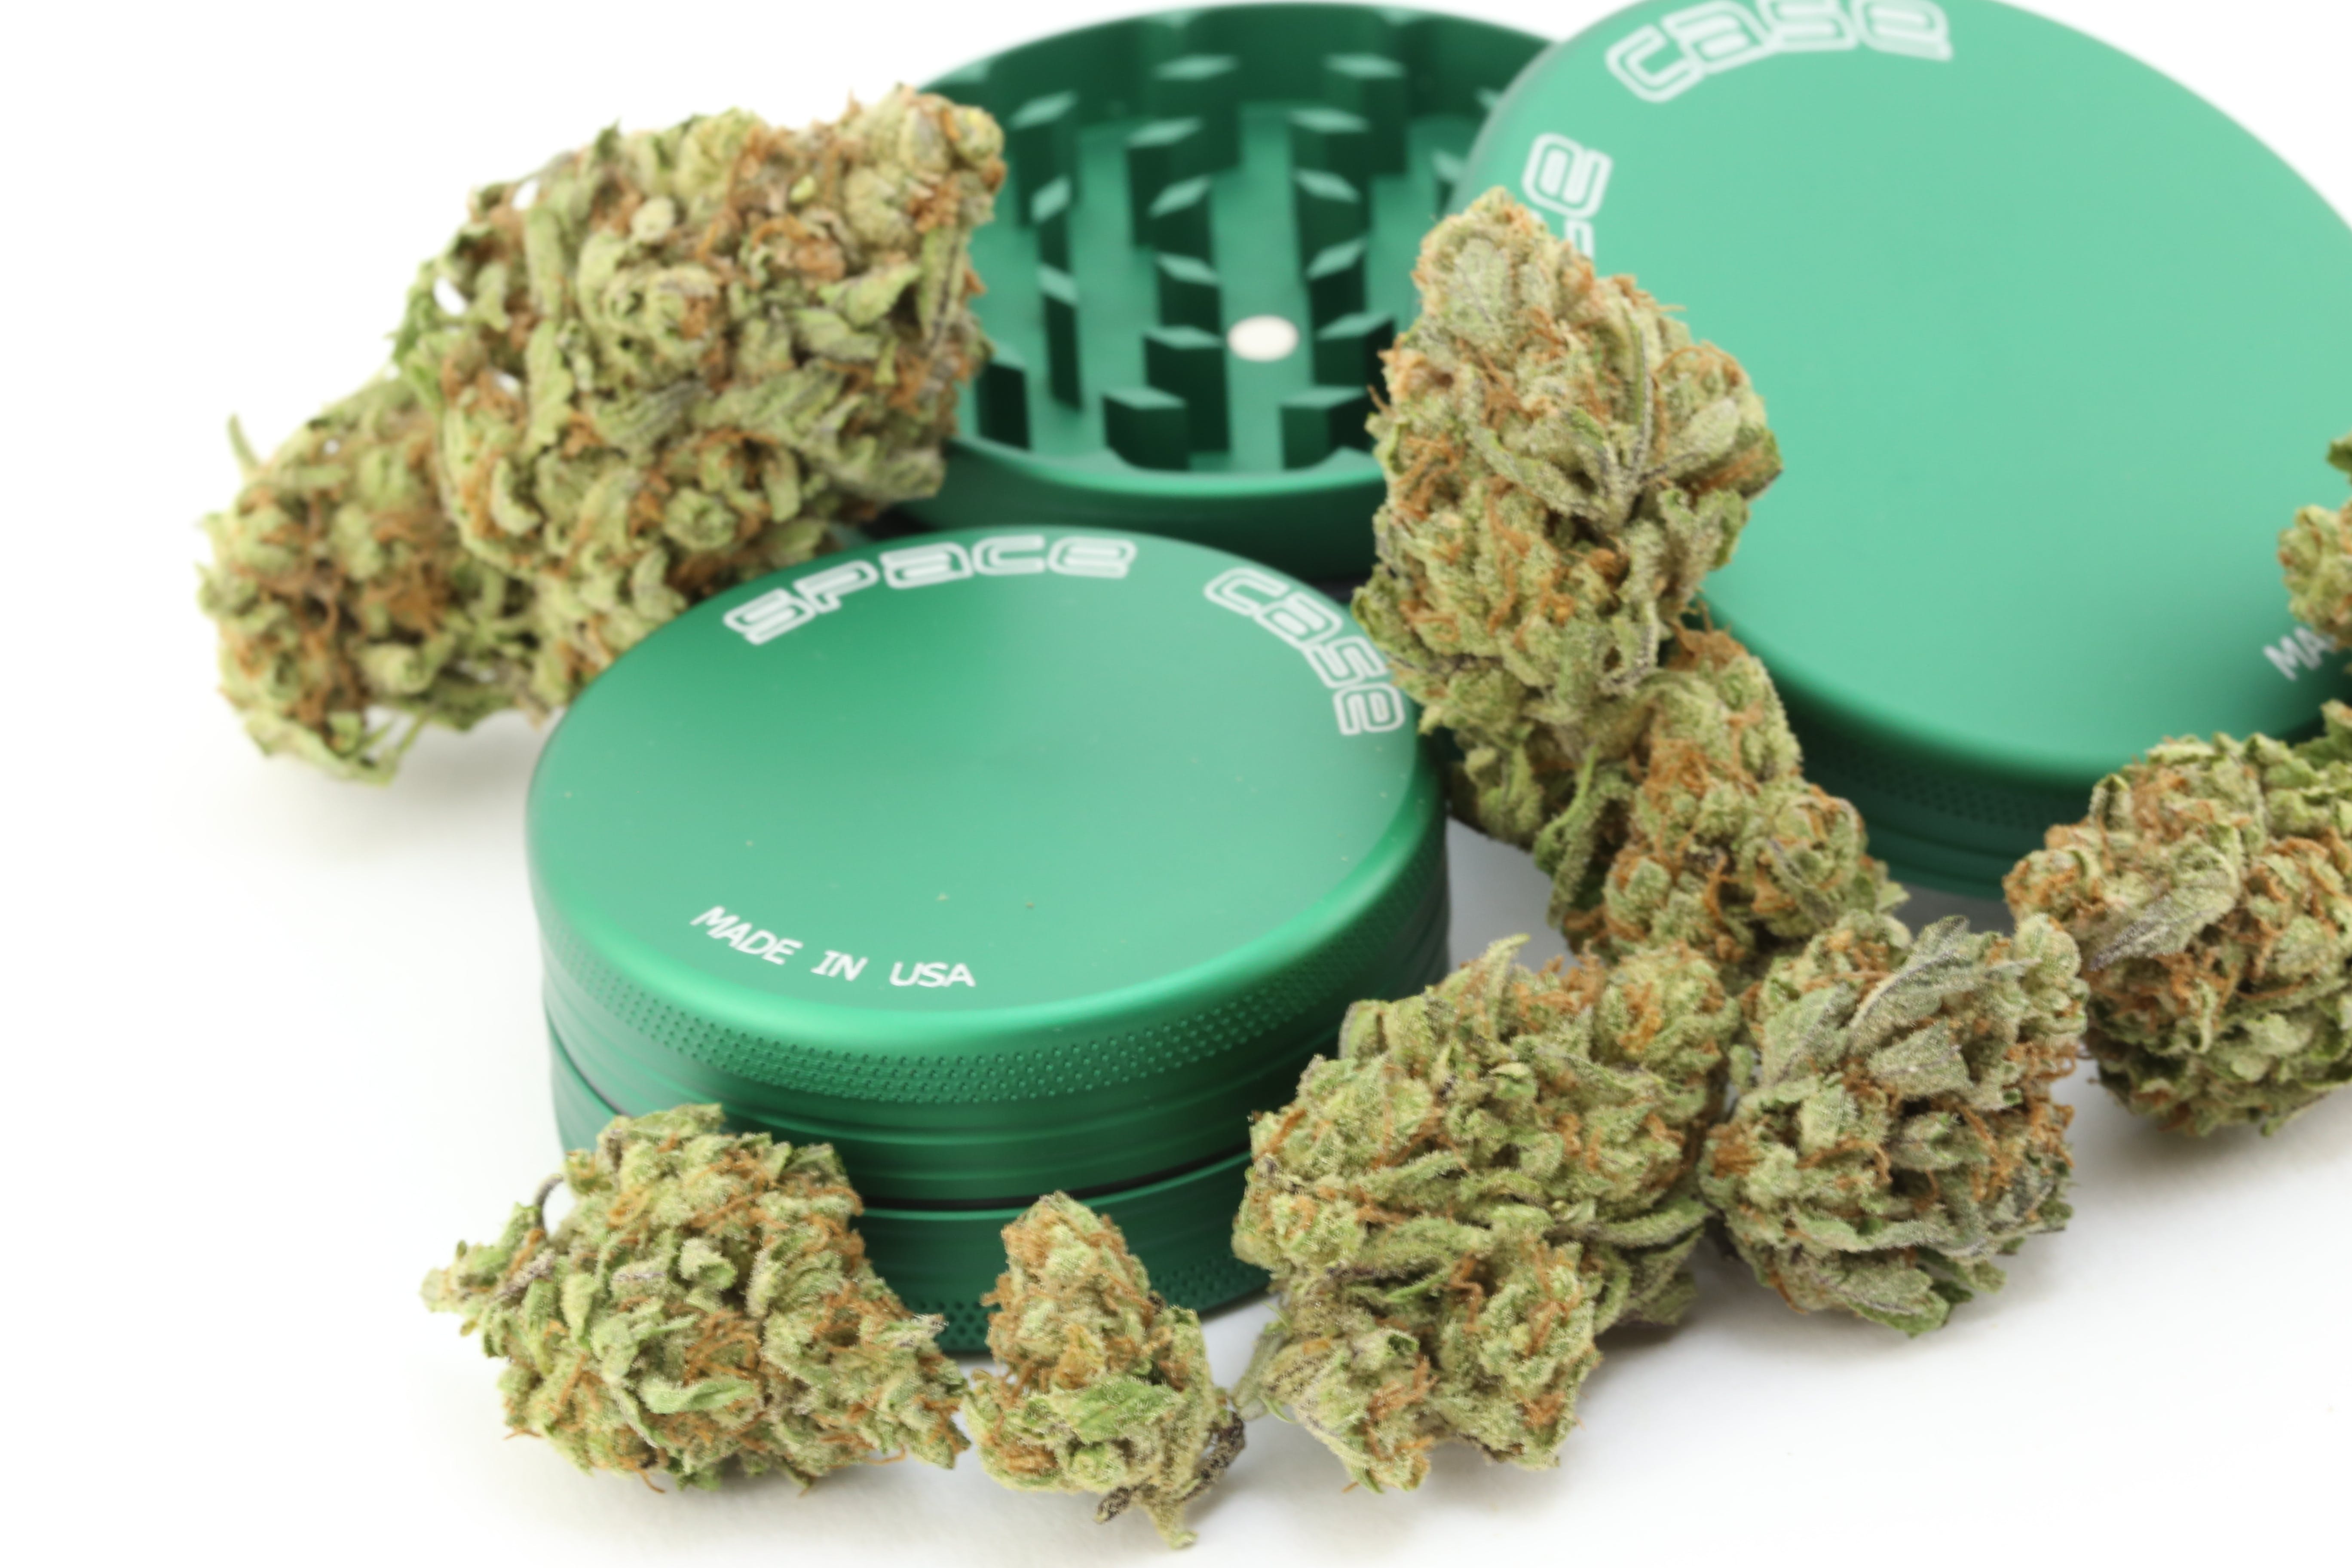 marijuana-dispensaries-rooted-northwest-llc-in-portland-space-case-grinders